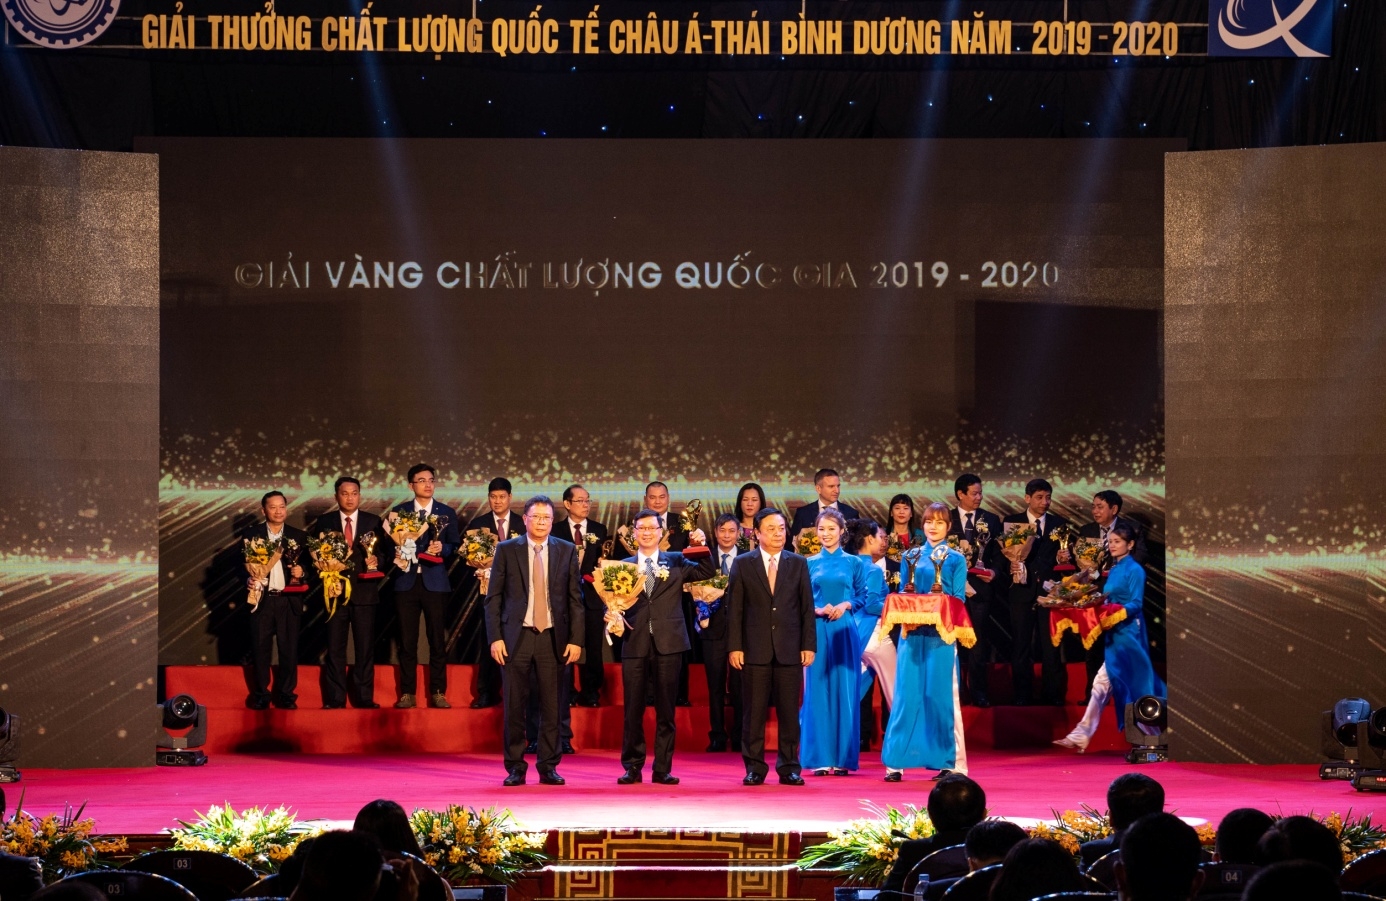 Tập đoàn Sơn Hà nhận giải Vàng chất lượng quốc gia